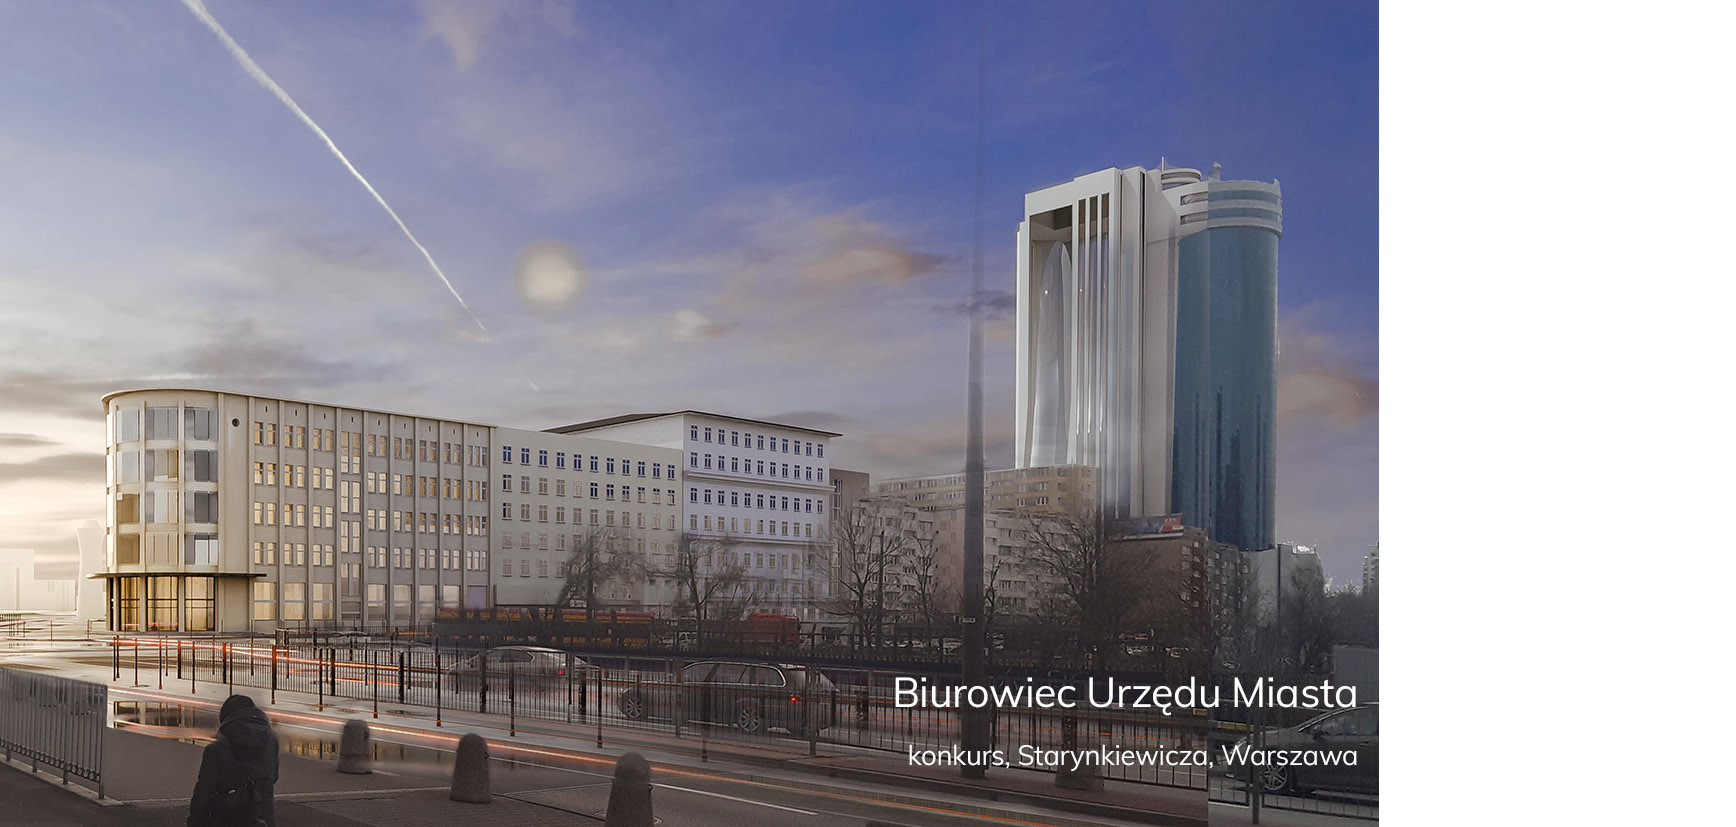 Biurowiec Urzędu Miasta Starynkiewicza Warszawa